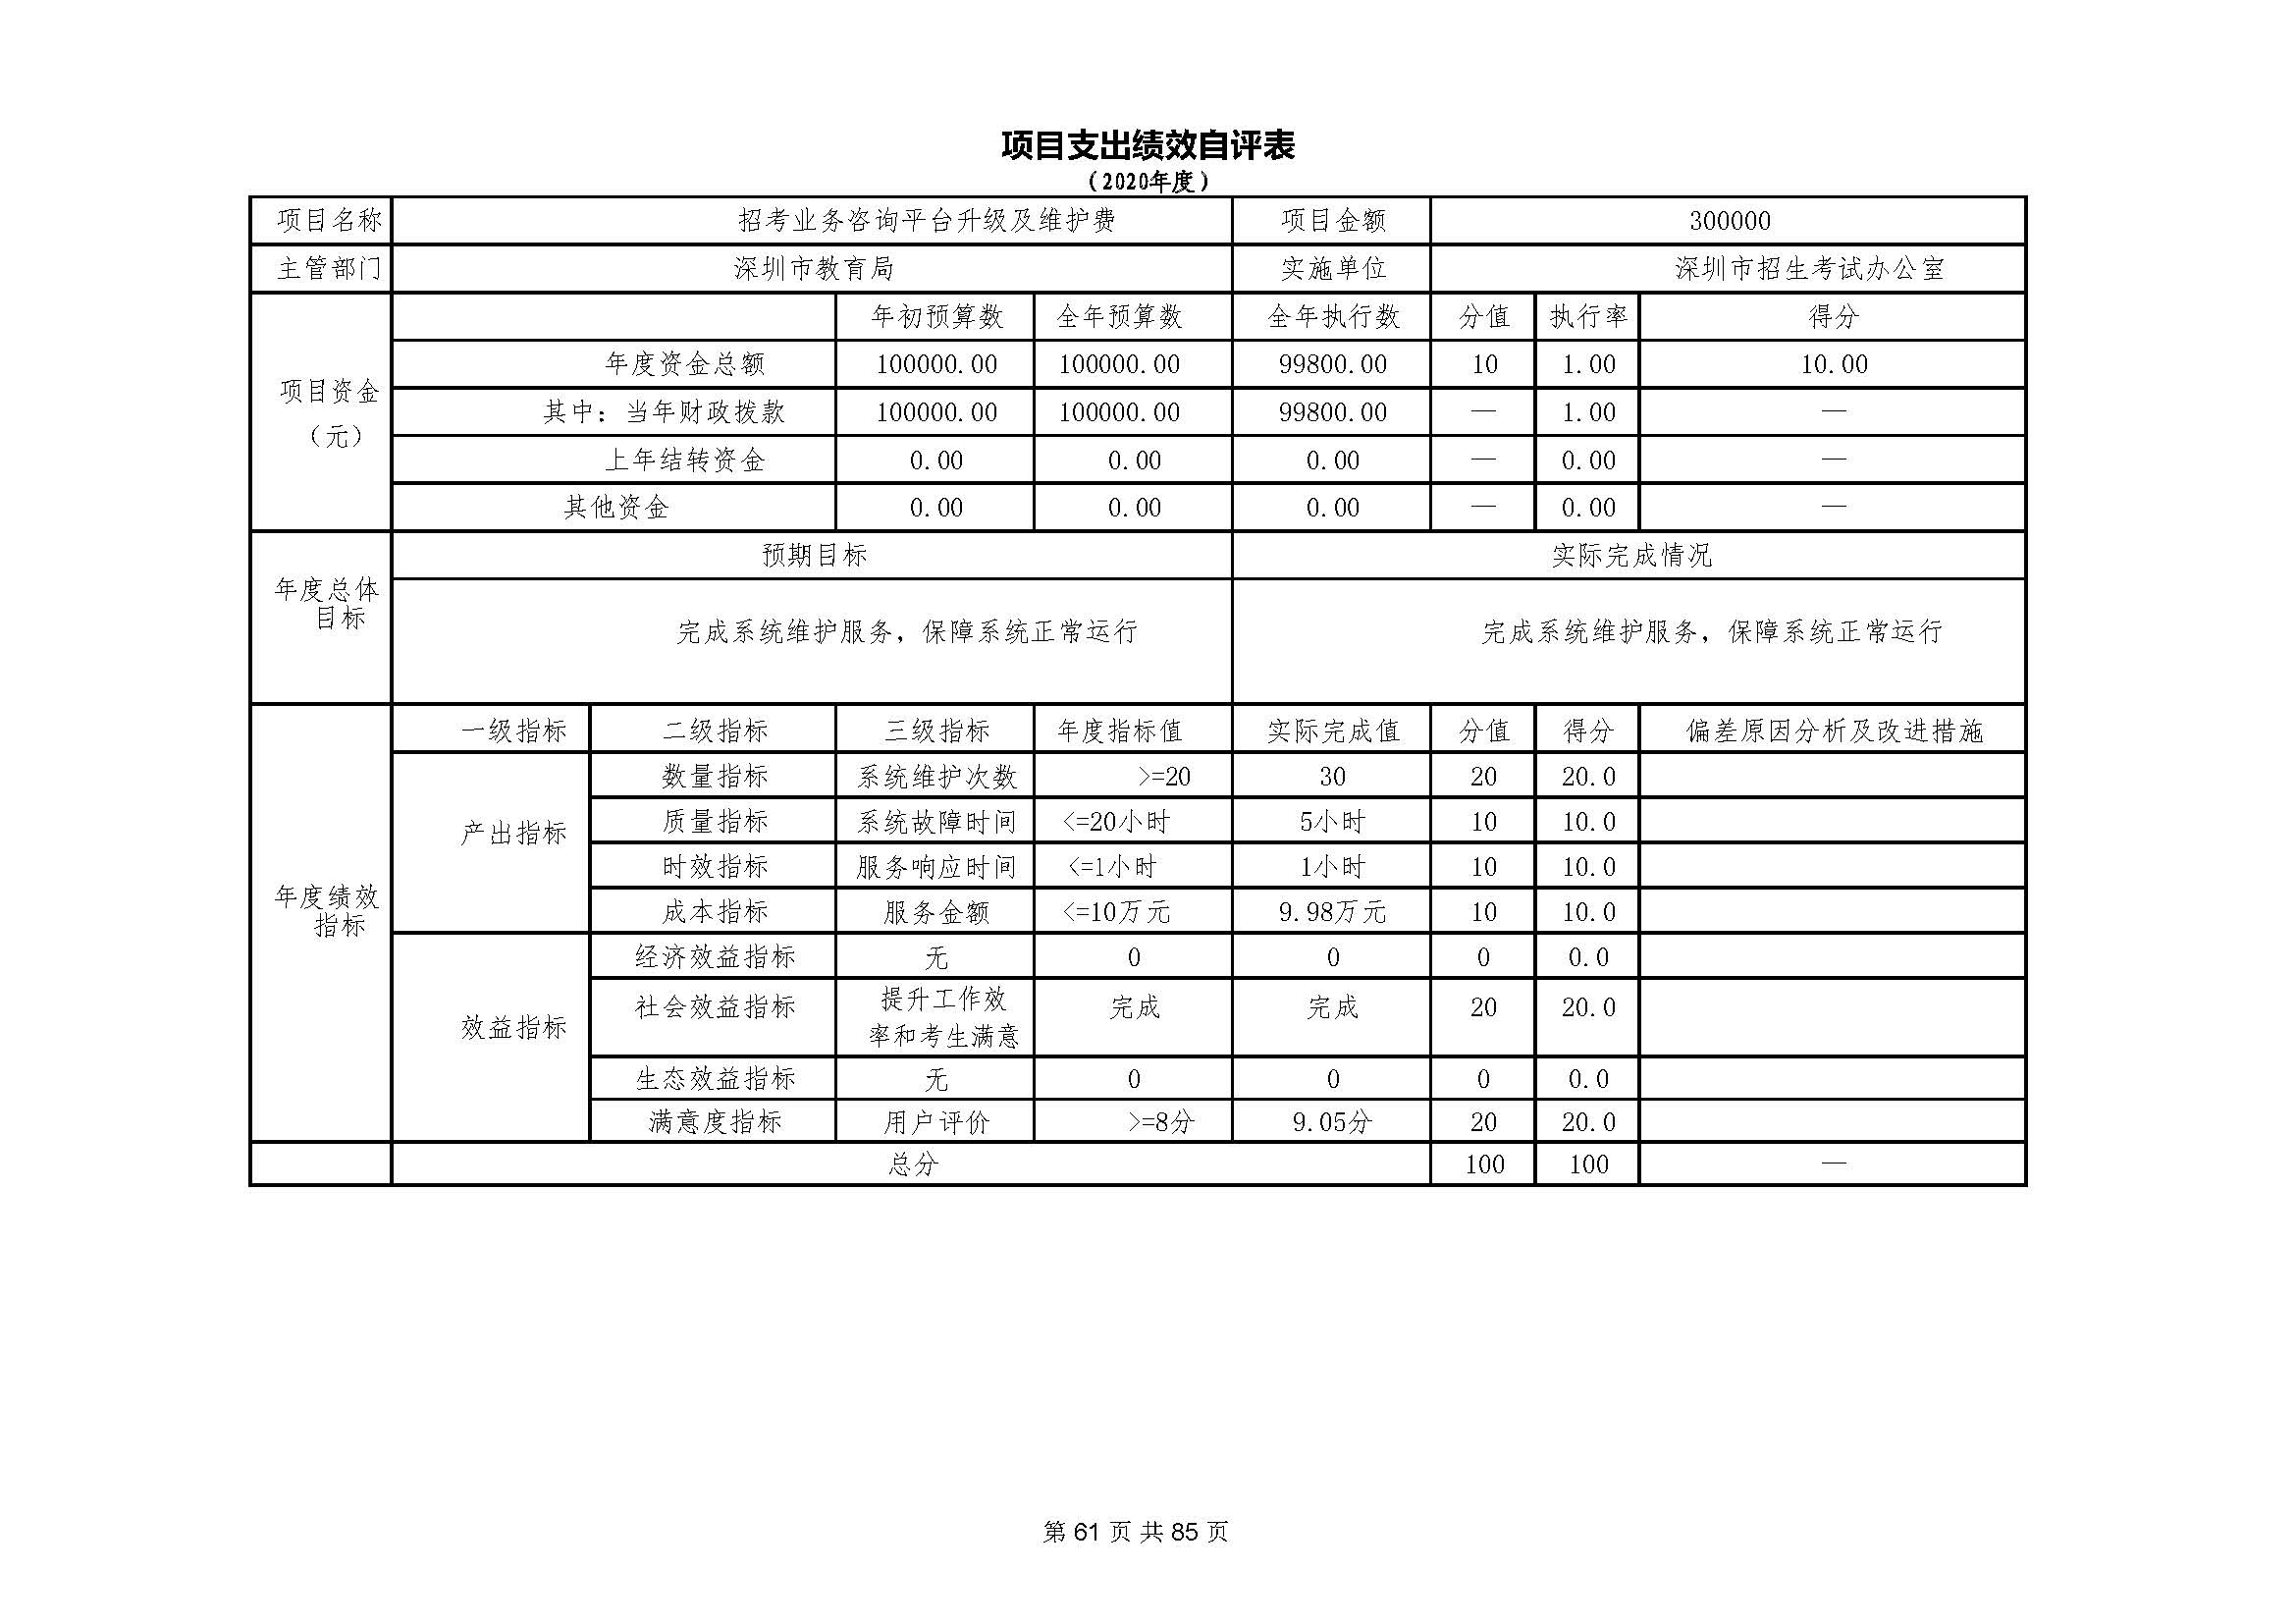 深圳市招生考试办公室2020年度部门决算_页面_62.jpg